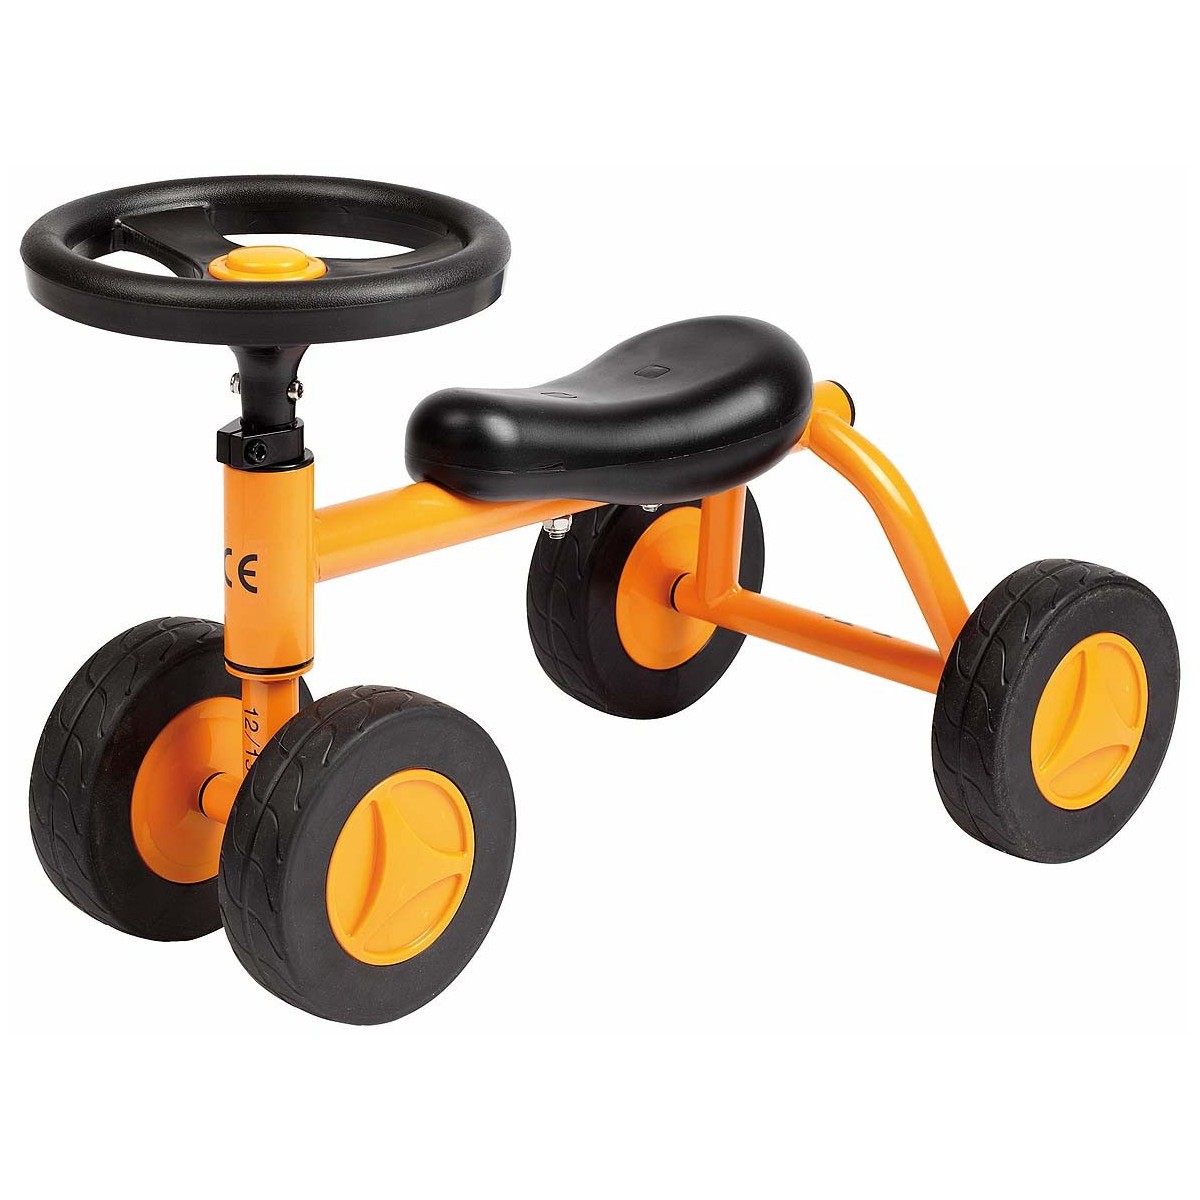 Mini Quad Top Trike - 1 - Le Mini Quad Top Trike permet aux enfants dès 1 an de s'initier aux quatre roues. Avec ce cycle roulan